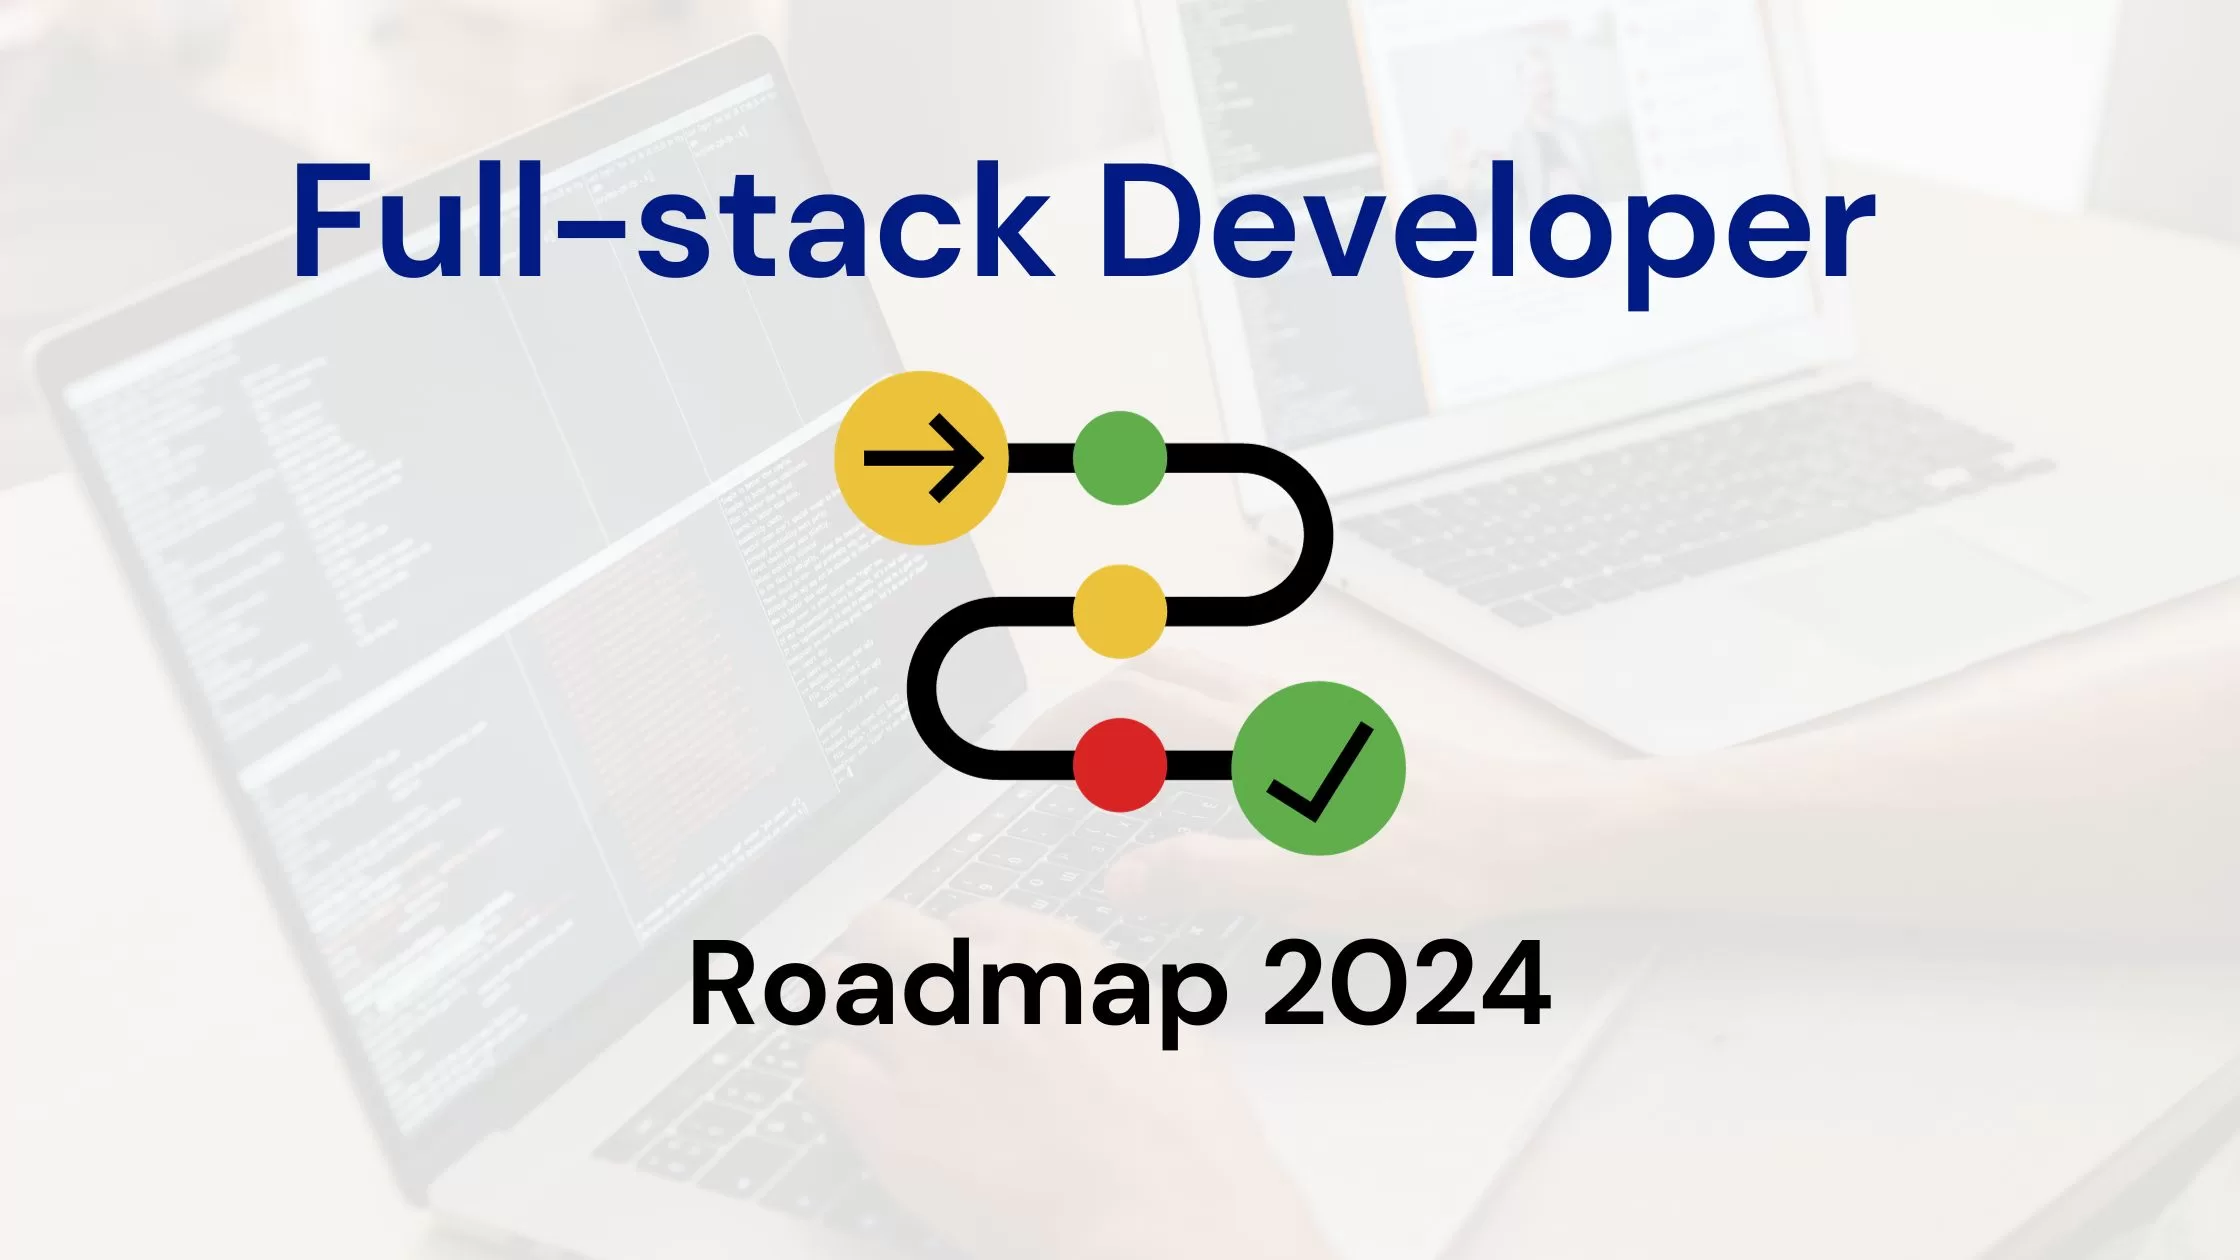 Fullstack Developer Roadmap 2024